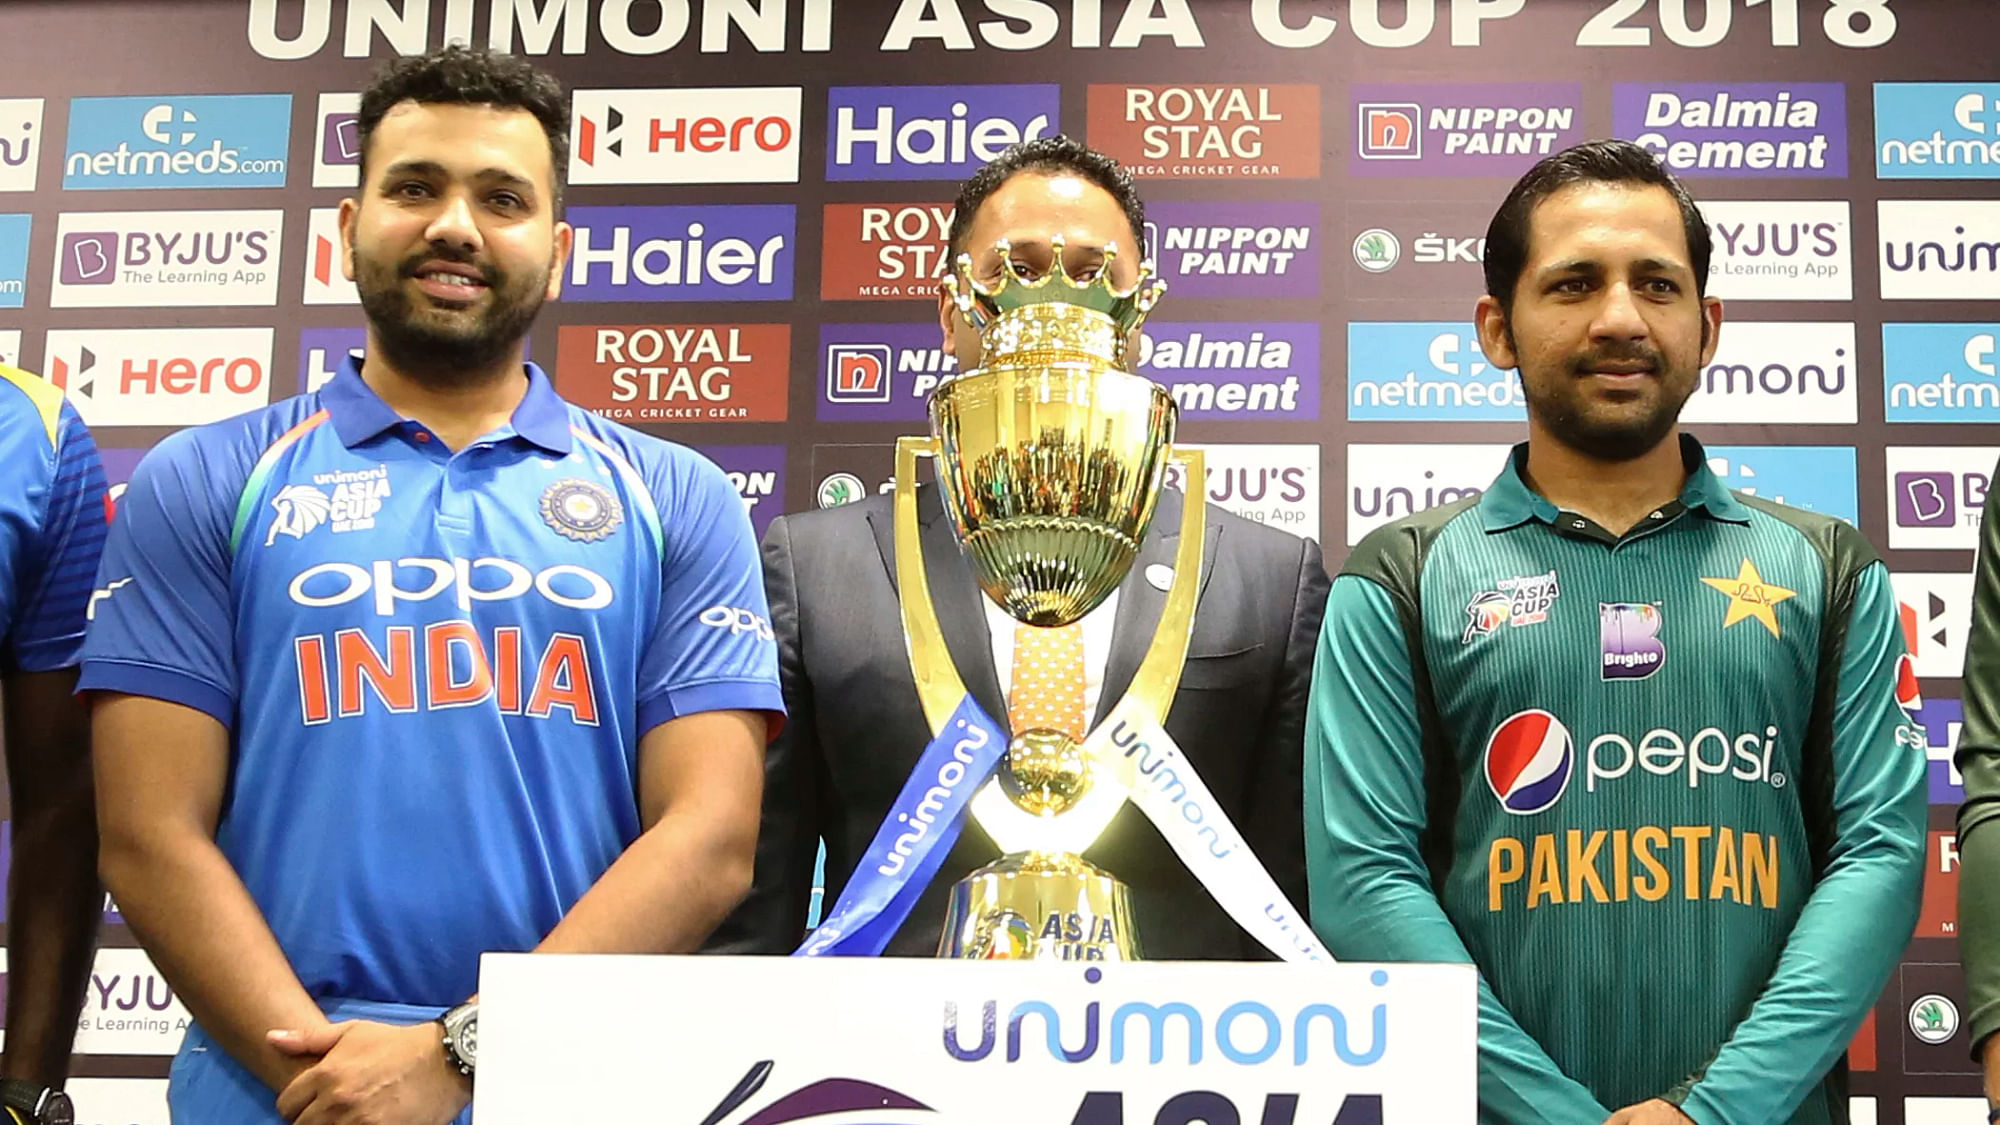 भारत के कप्तान रोहित शर्मा और पाकिस्तान के कप्तान सरफराज अहमद एशिया कप 2018 की ट्रॉफी के साथ